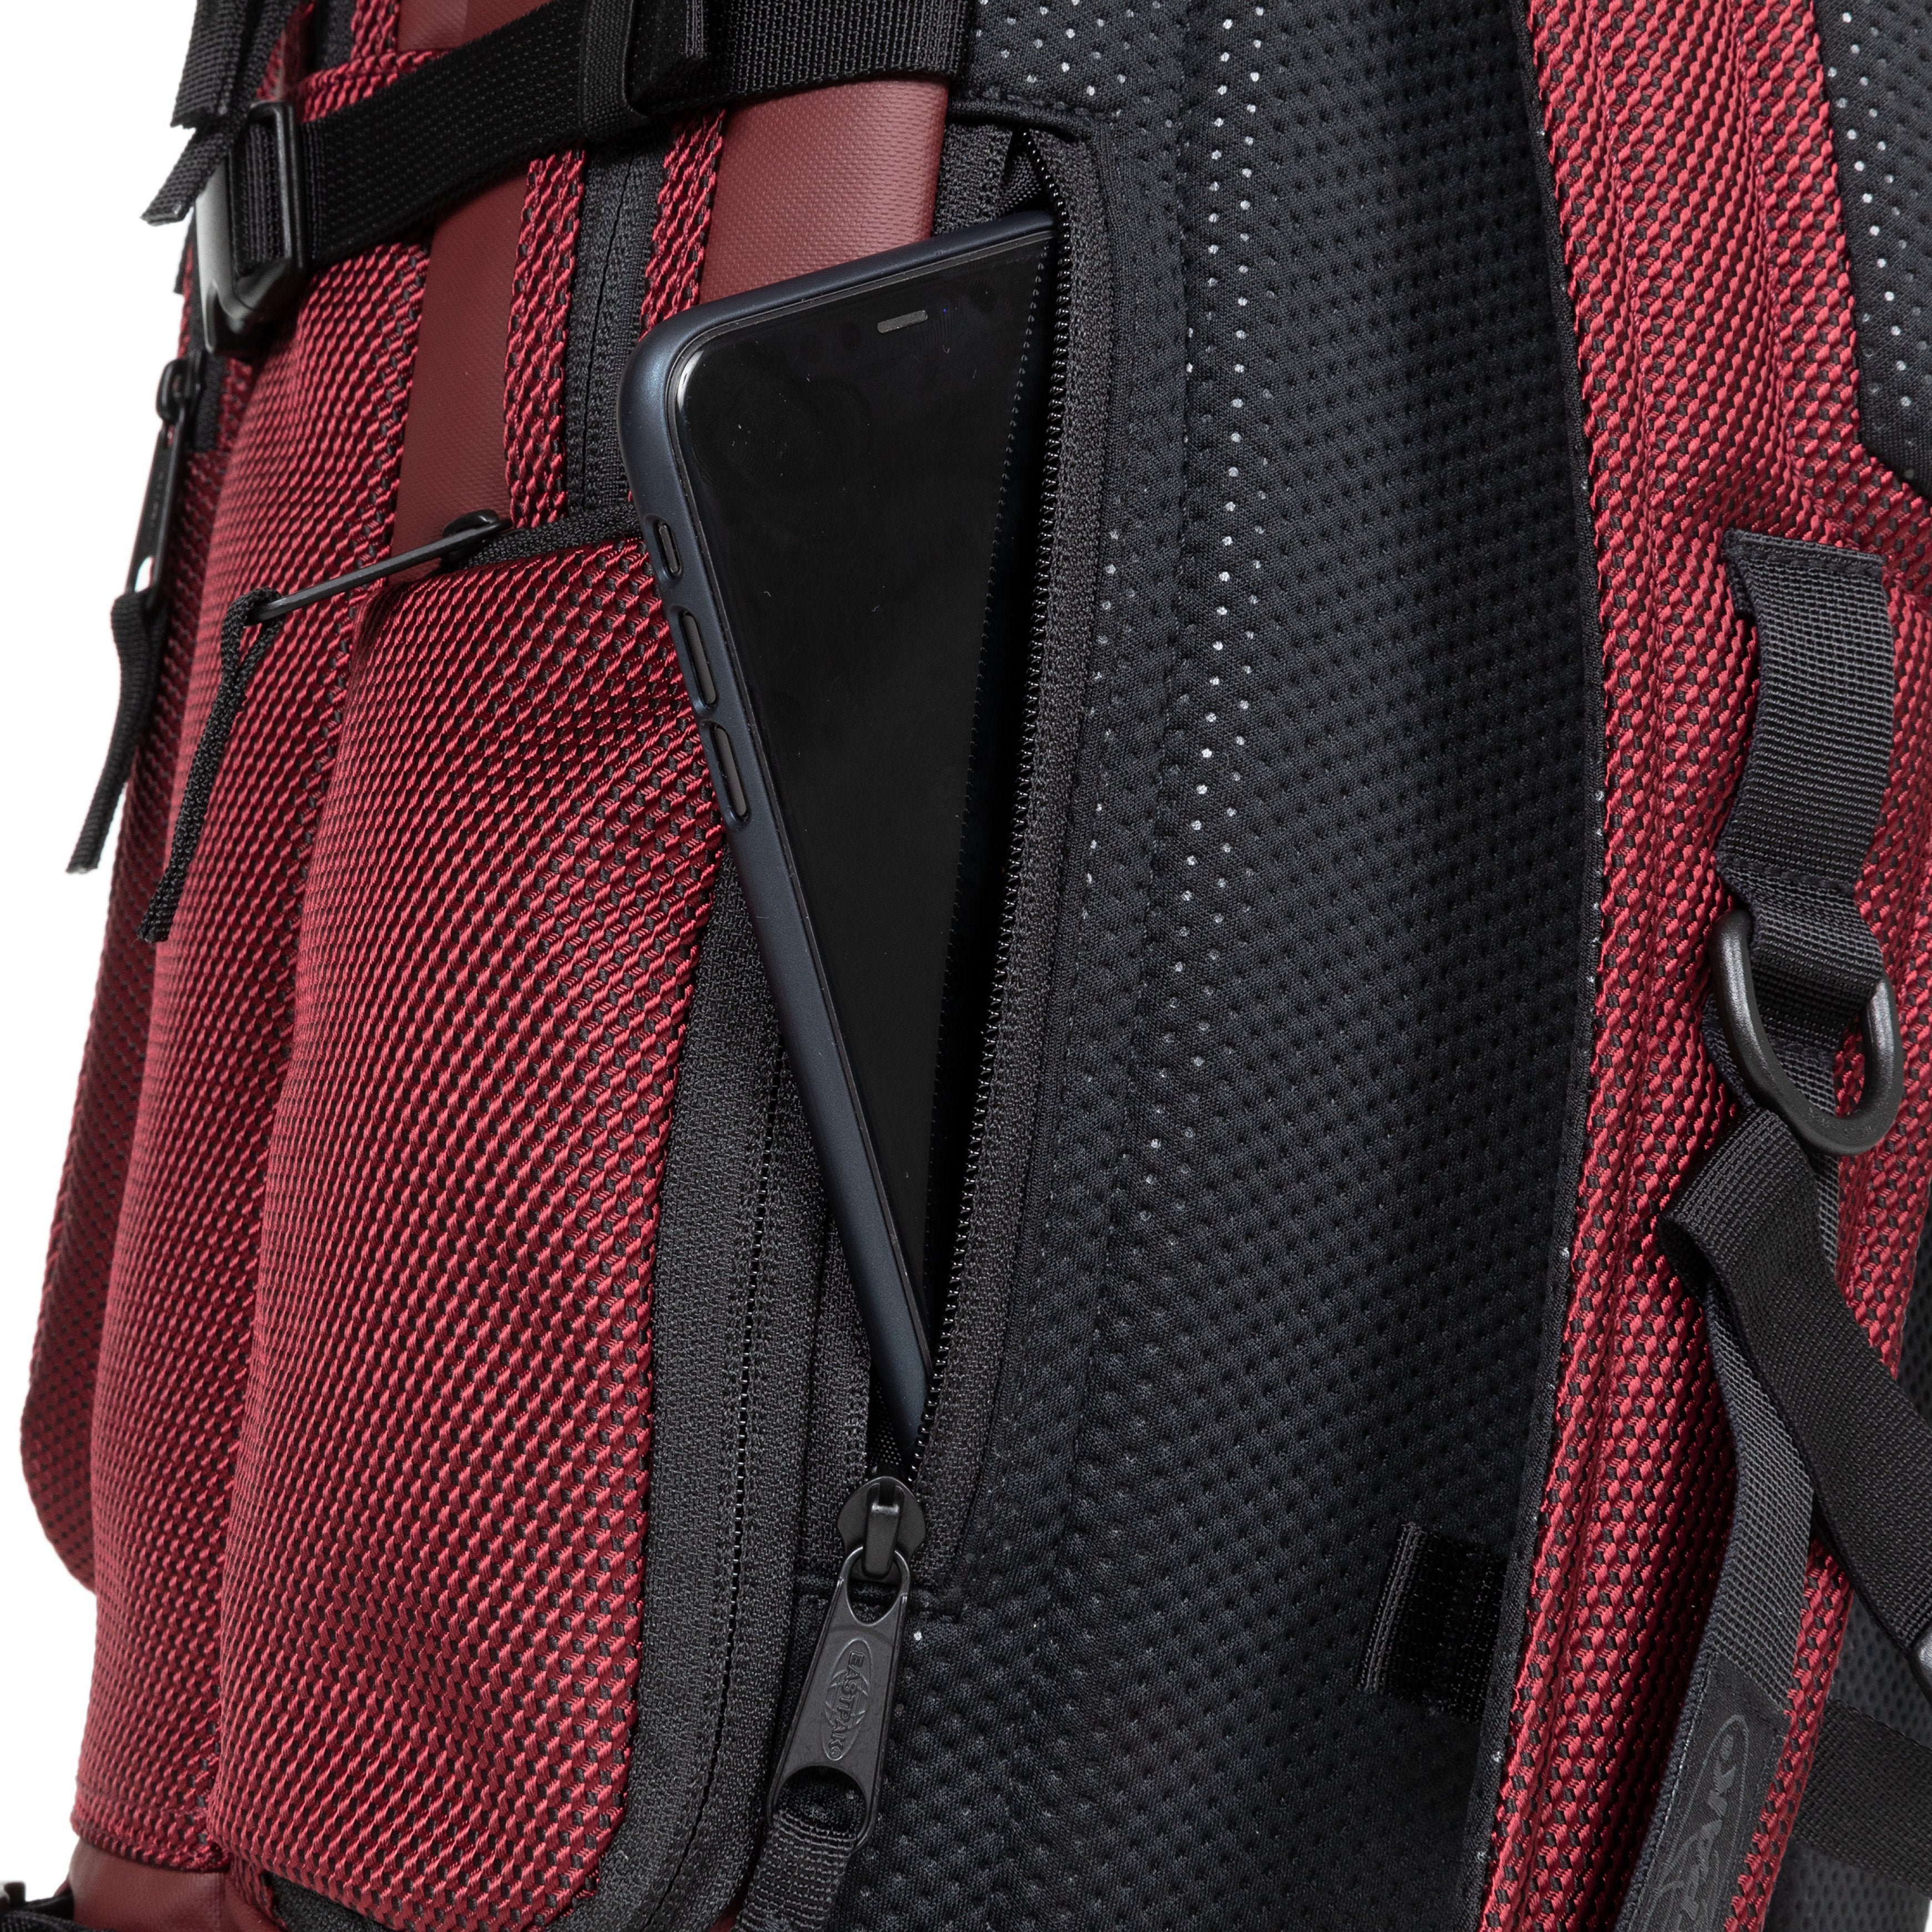 Eastpak-Tecum L-Large Backpack With Bottle Holder And Laptop Sleeve-Cnnct Burgundy-Ek00092Dw341